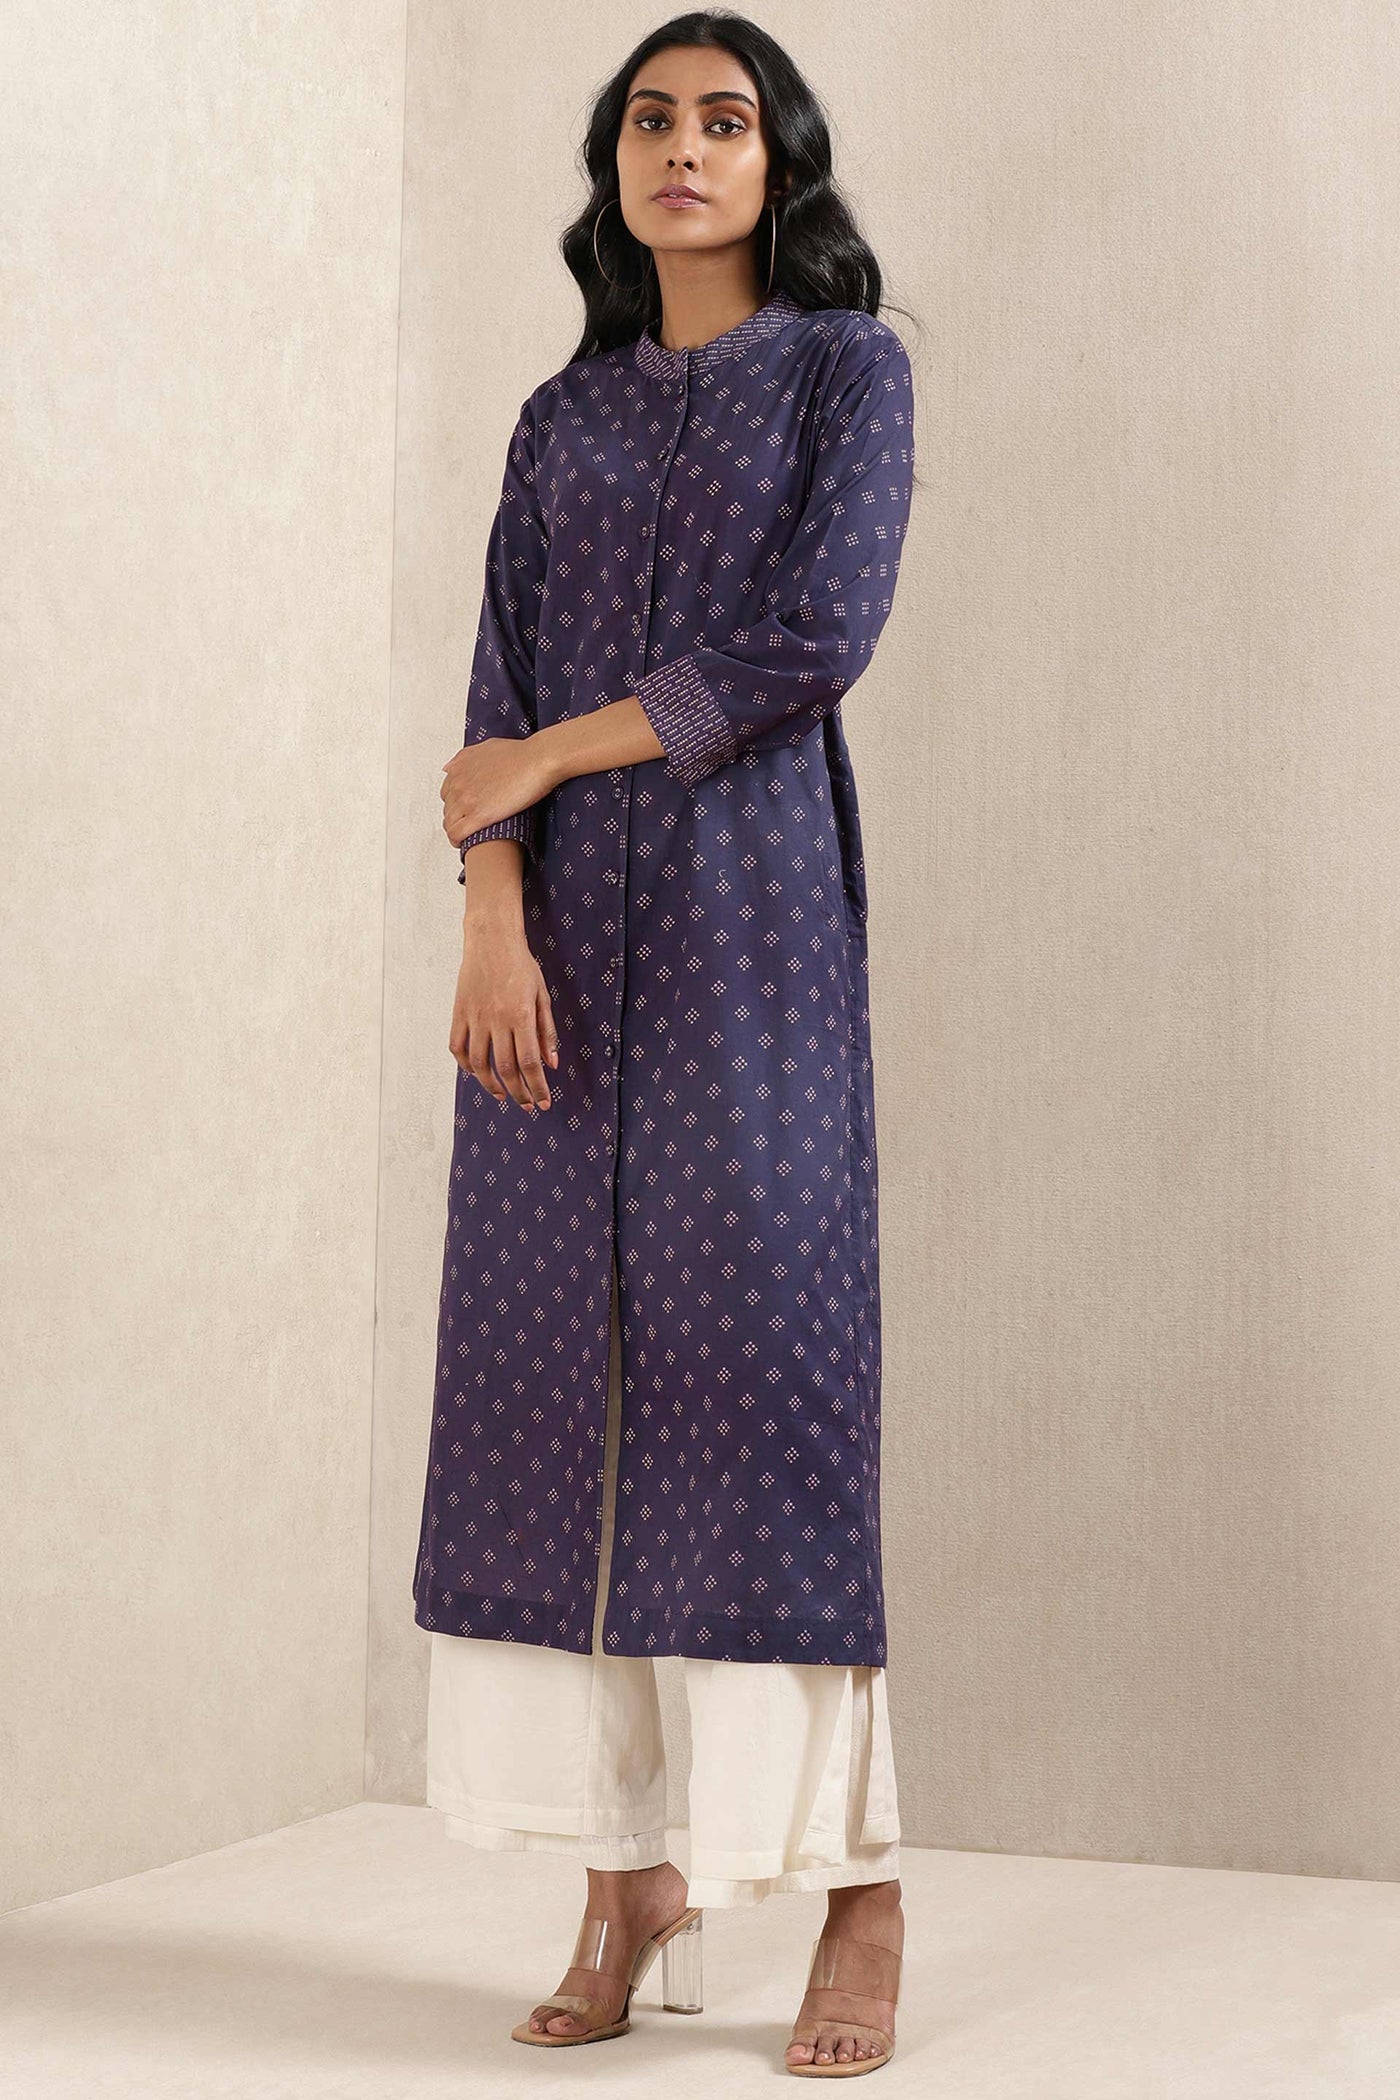 ritu kumar Ink Blue Printed Cotton Kurta online shopping melange singapore indian designer wear